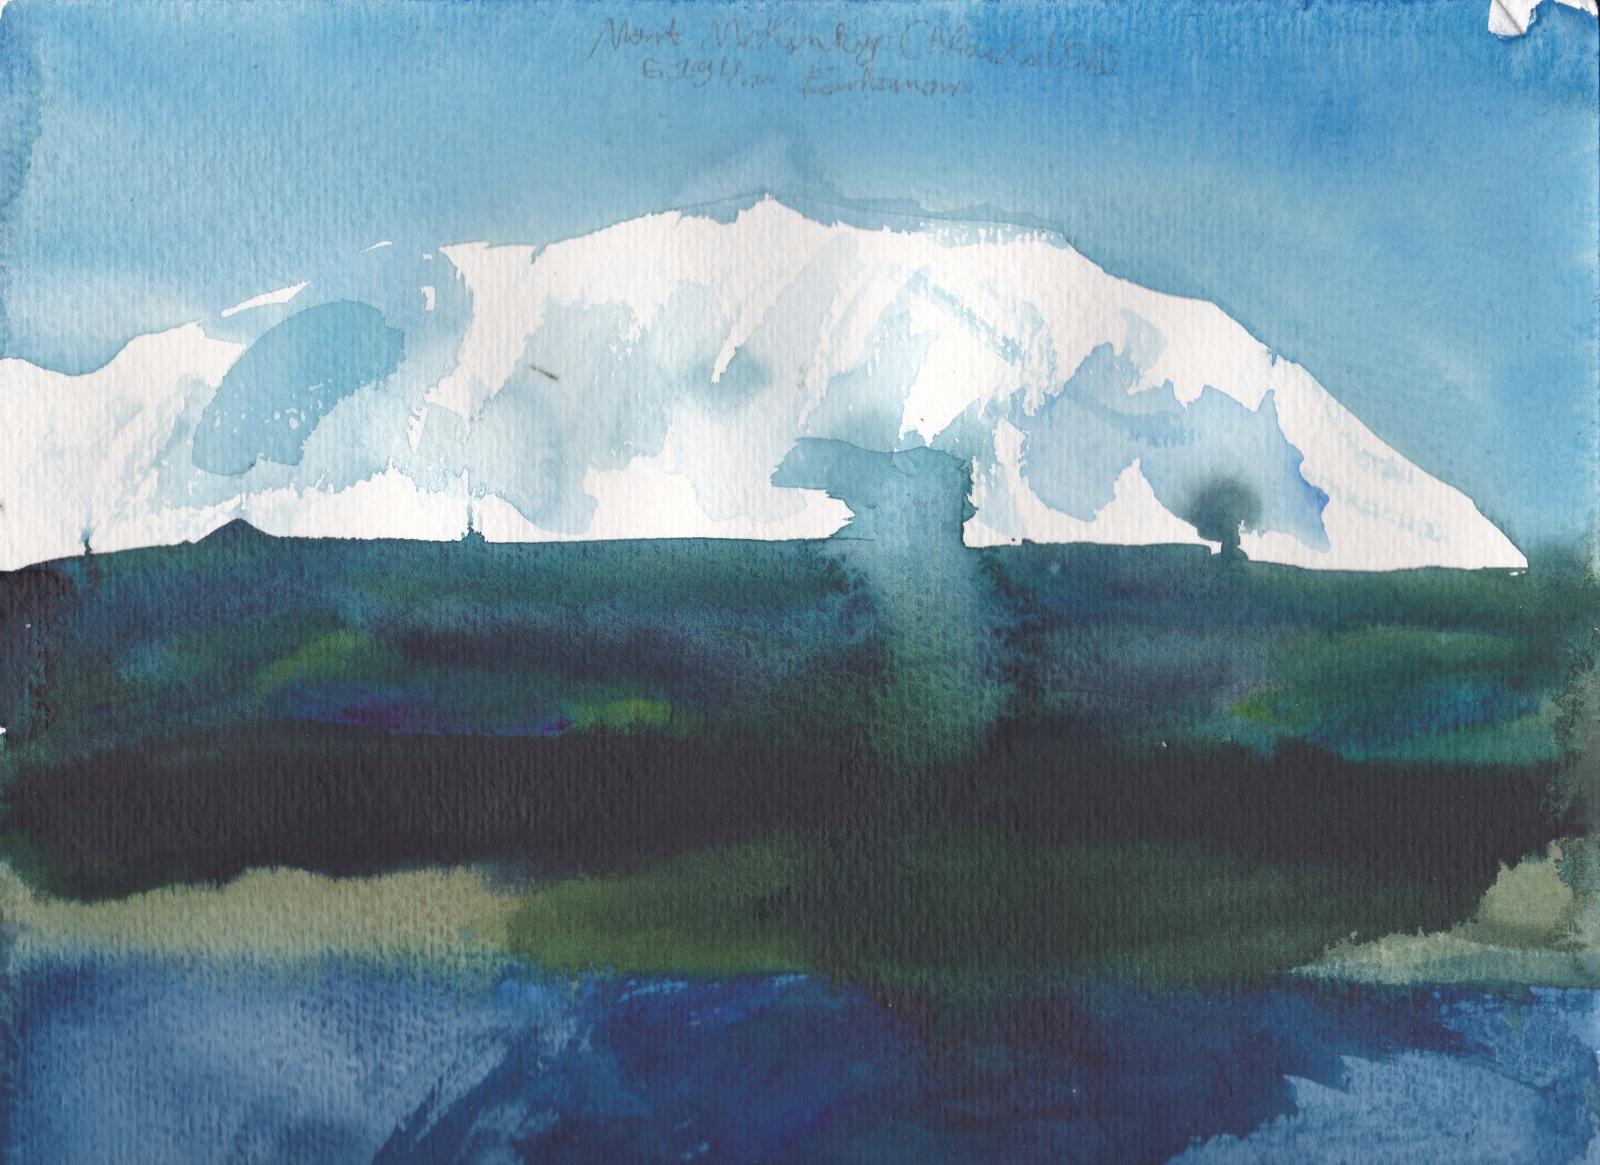 Le Mont McKinley, point culminant de l'Amérique du Nord à 6194m d'altitude, et ses gros glaciers puis forets et lacs d'Alaska. (Alaska)